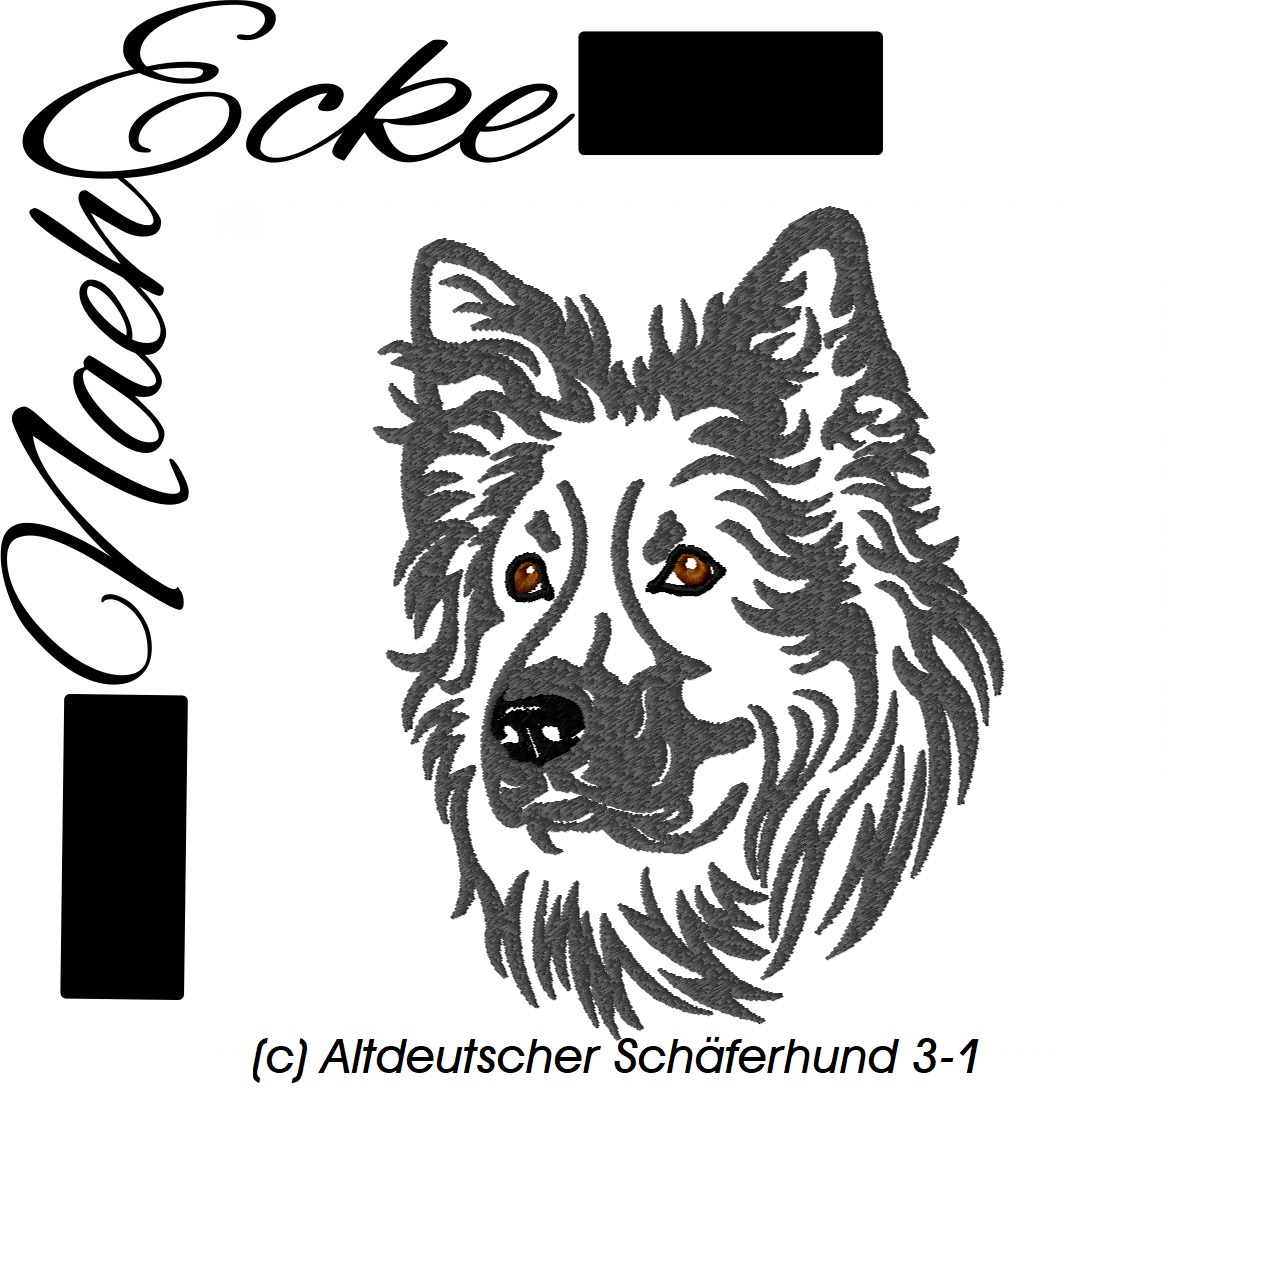 Altdeutscher Schäferhund 3-1